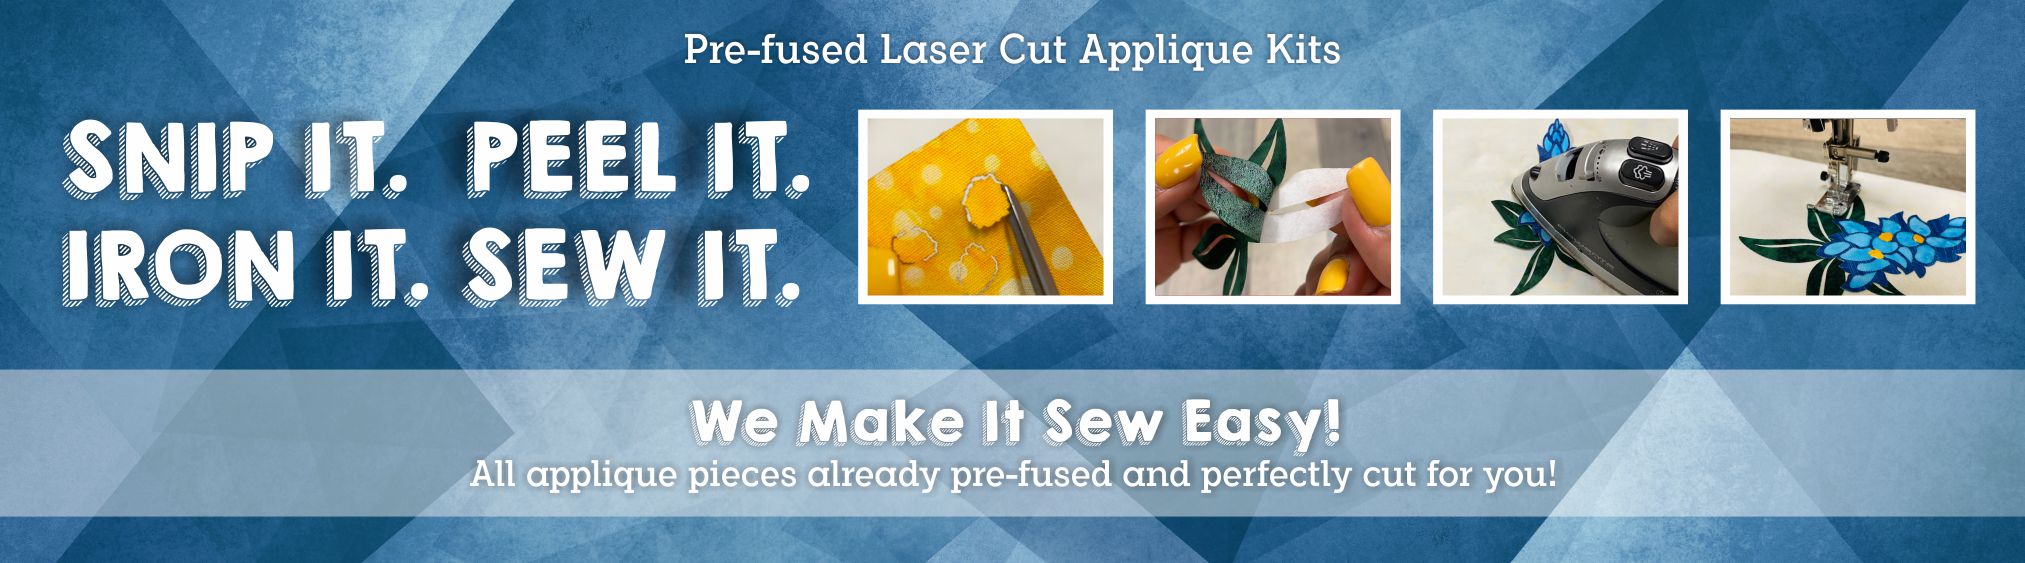 Laser cut applique